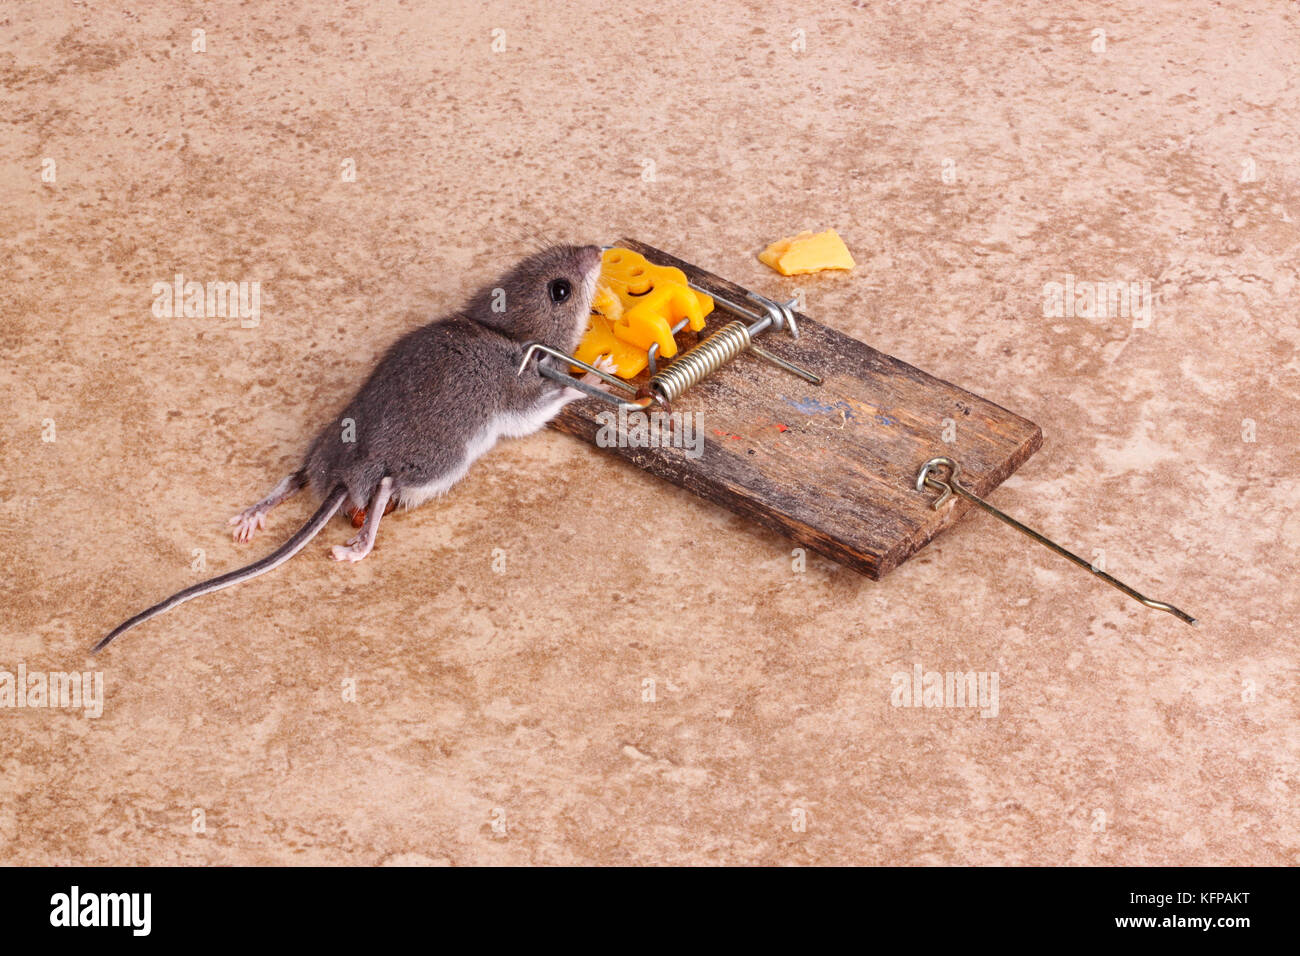 Gemeinsame Hausmaus (Mus musculus) in einer Feder getötet - geladen Bar snap Trap auf einem Fliesenboden Hintergrund Stockfoto